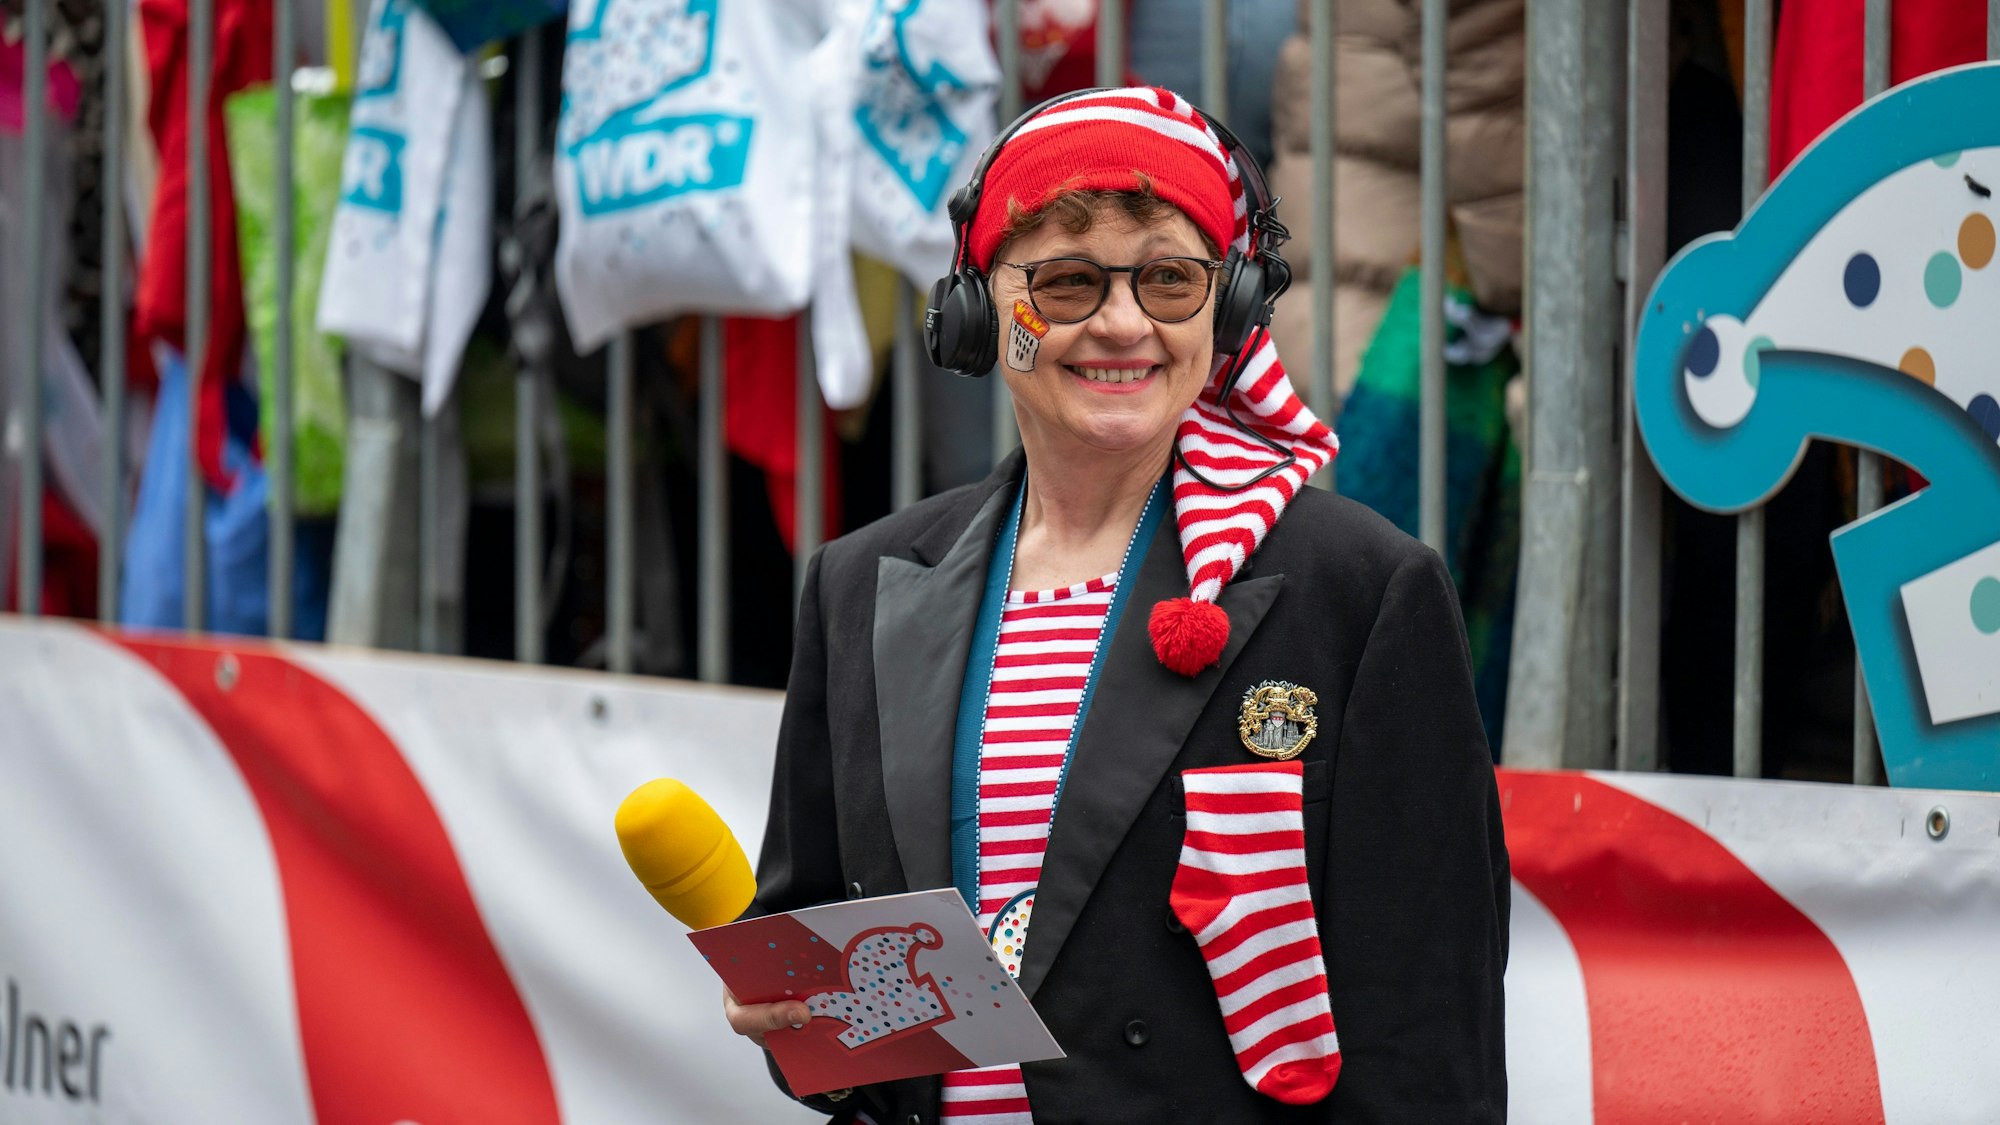 Der Karnevalszug wird auch im Fernsehen übertragen. Zum Moderatorinnenteam gehört hier auch die Journalistin Monika Salchert, die auch für den „Kölner Stadt-Anzeiger“ schreibt.